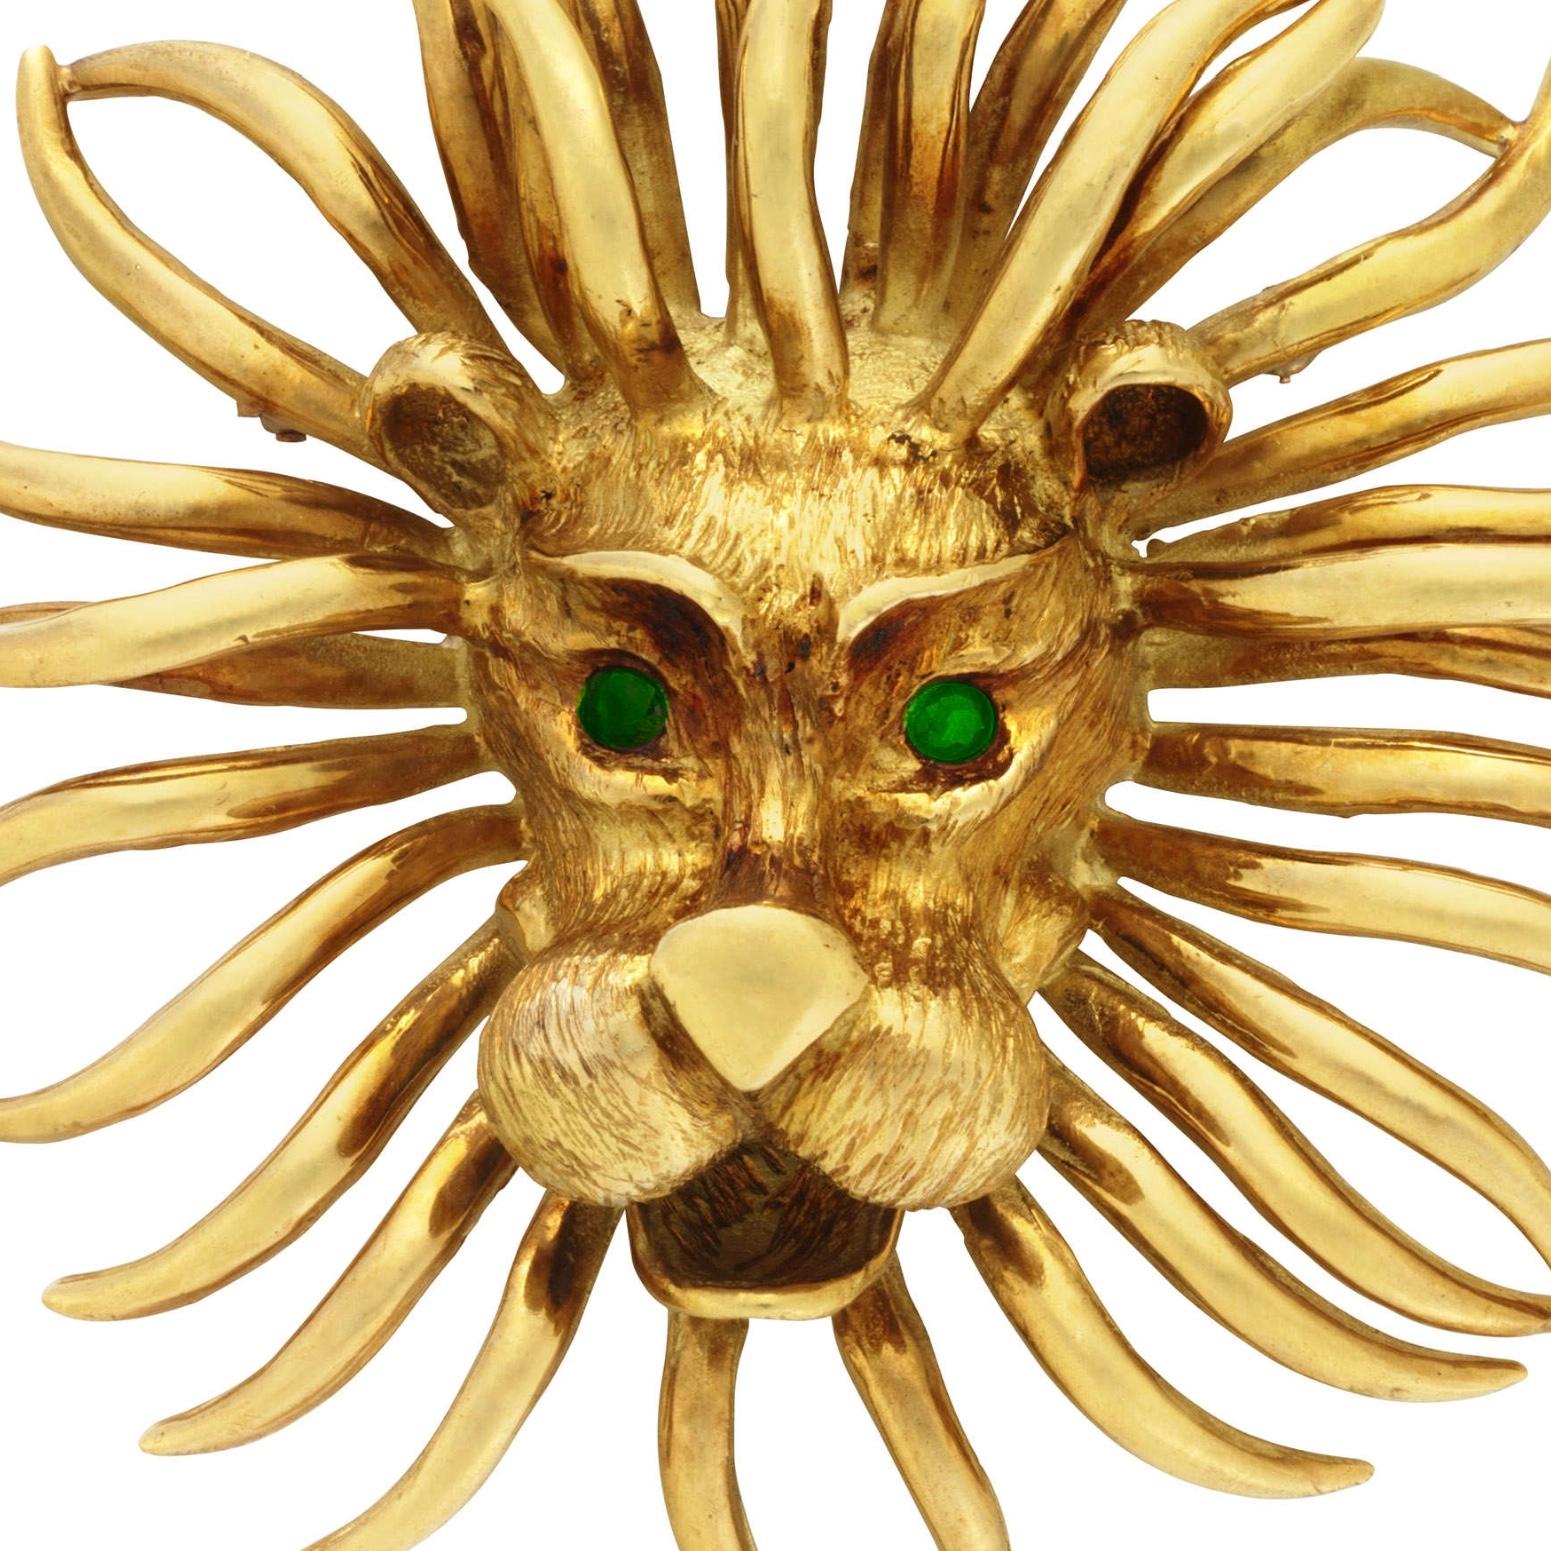 Une rare et élégante broche-pendentif lion en or 18 carats et émeraude par Cartier, vers les années 1970. Il s'agit d'une pièce rare publiée dans le livre de Cartier sur la bijouterie animale.